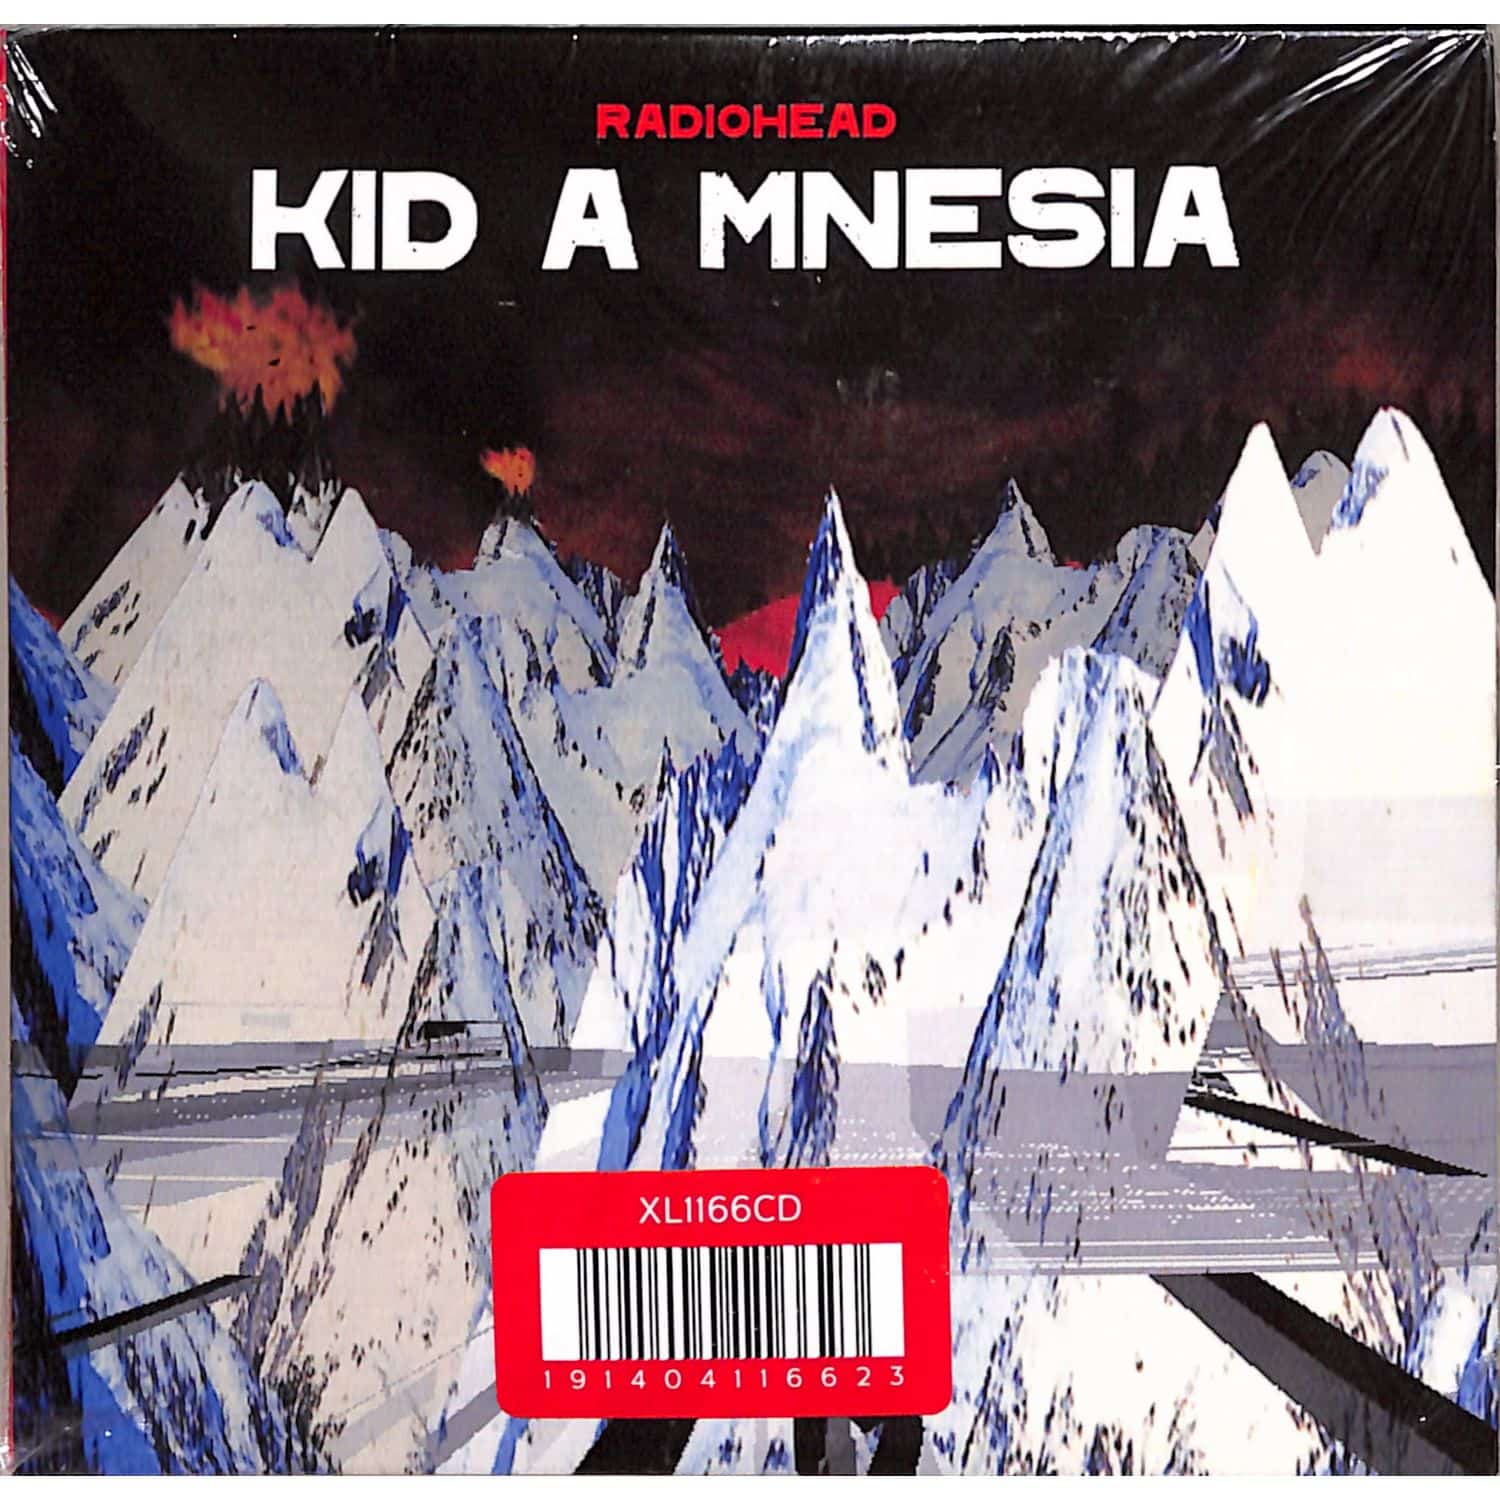 Radiohead - KID A MNESIA 